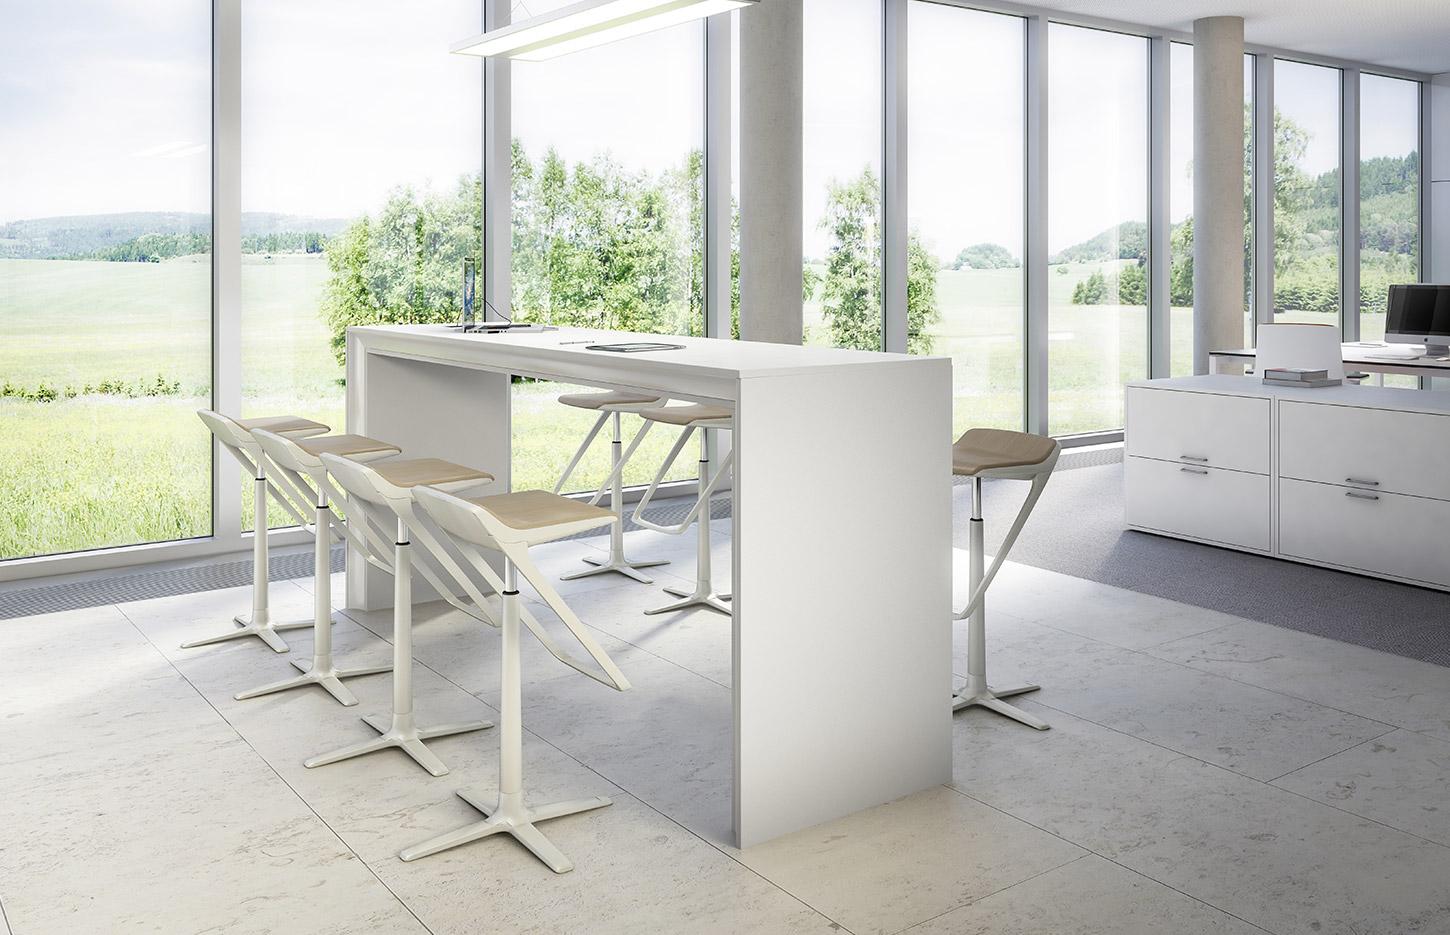 Tabouret ergonomique structure réglable en hauteur en aluminium, gamme Kineticis5 - France Bureau